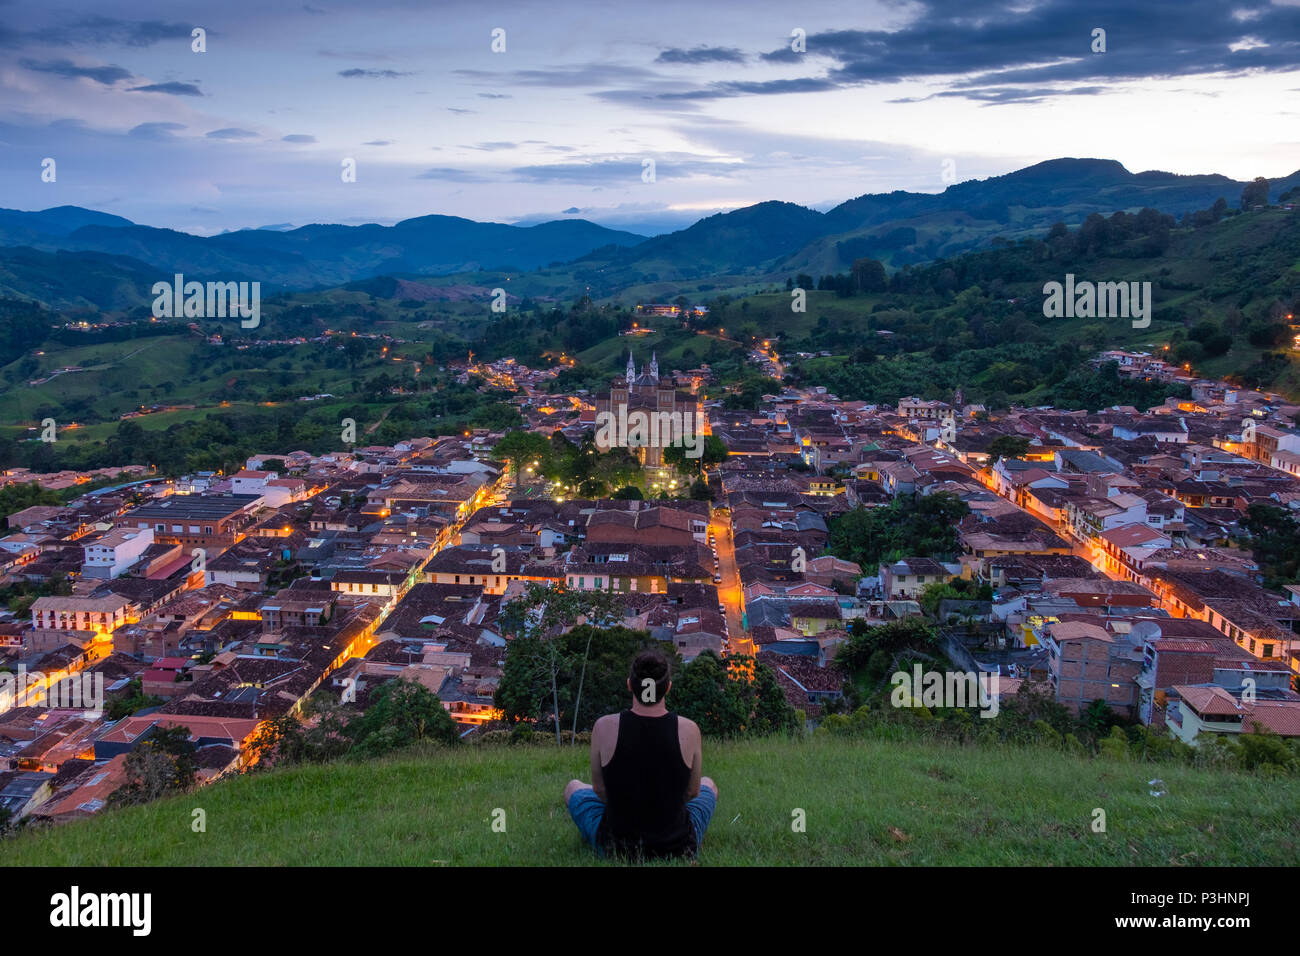 Morro El salvador viewpoint, con una persona che si affaccia sulla città di Jericó, Antioquia, Colombia durante il tramonto Foto Stock